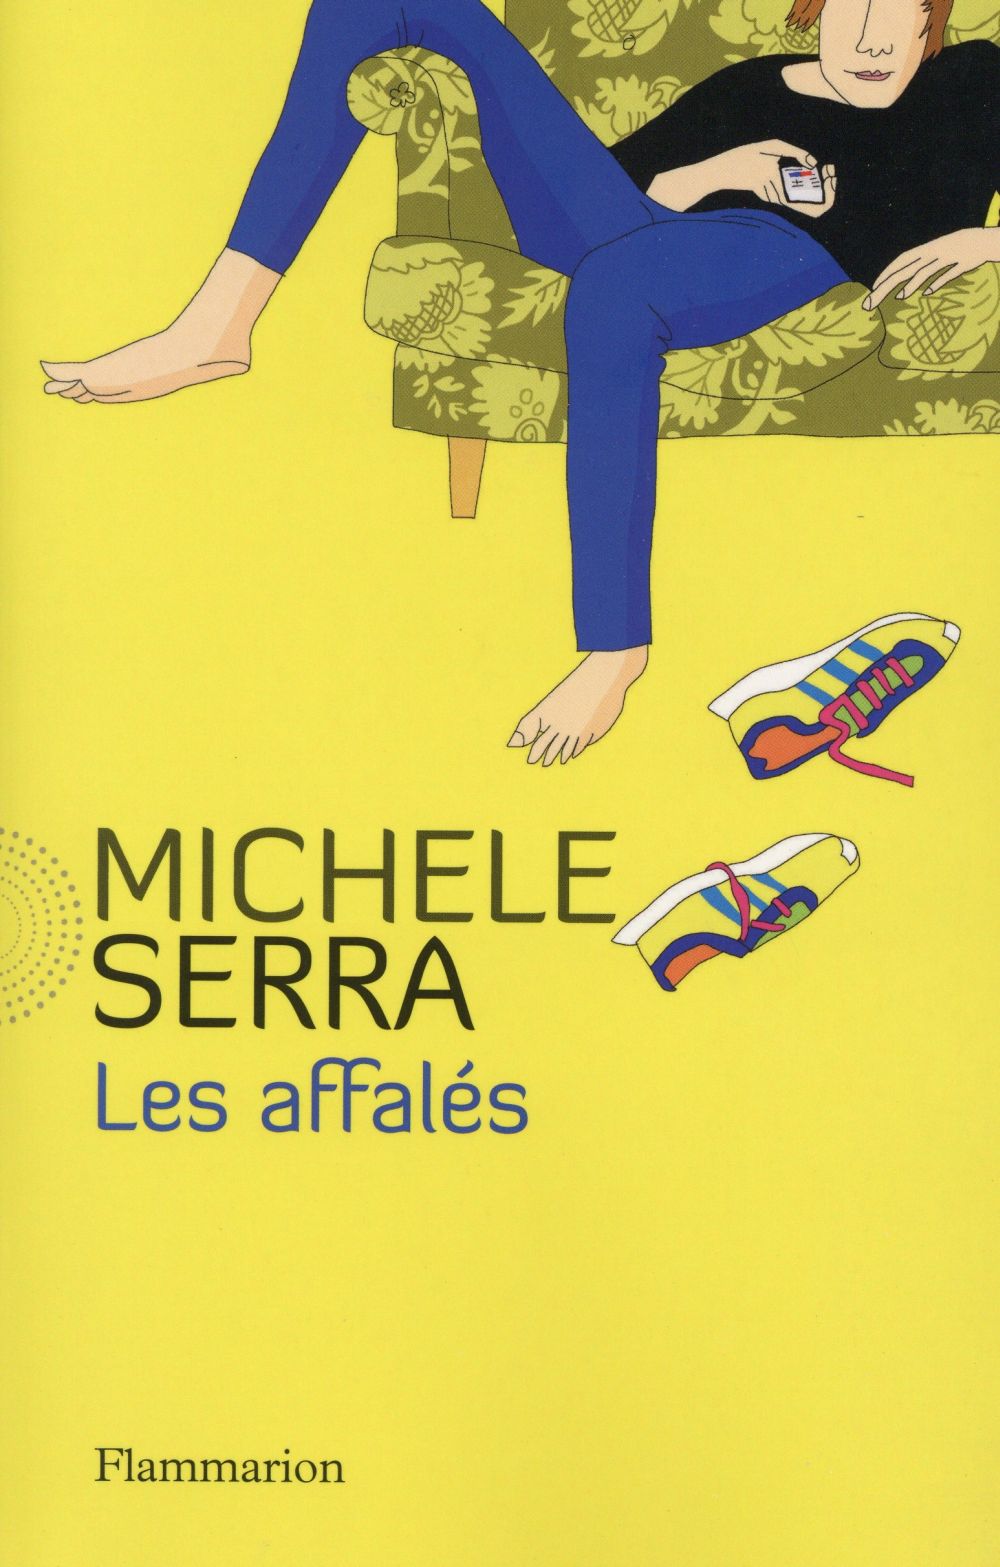 "Les affalés" de Michele Serra - la chronique #36 du Club des Explorateurs